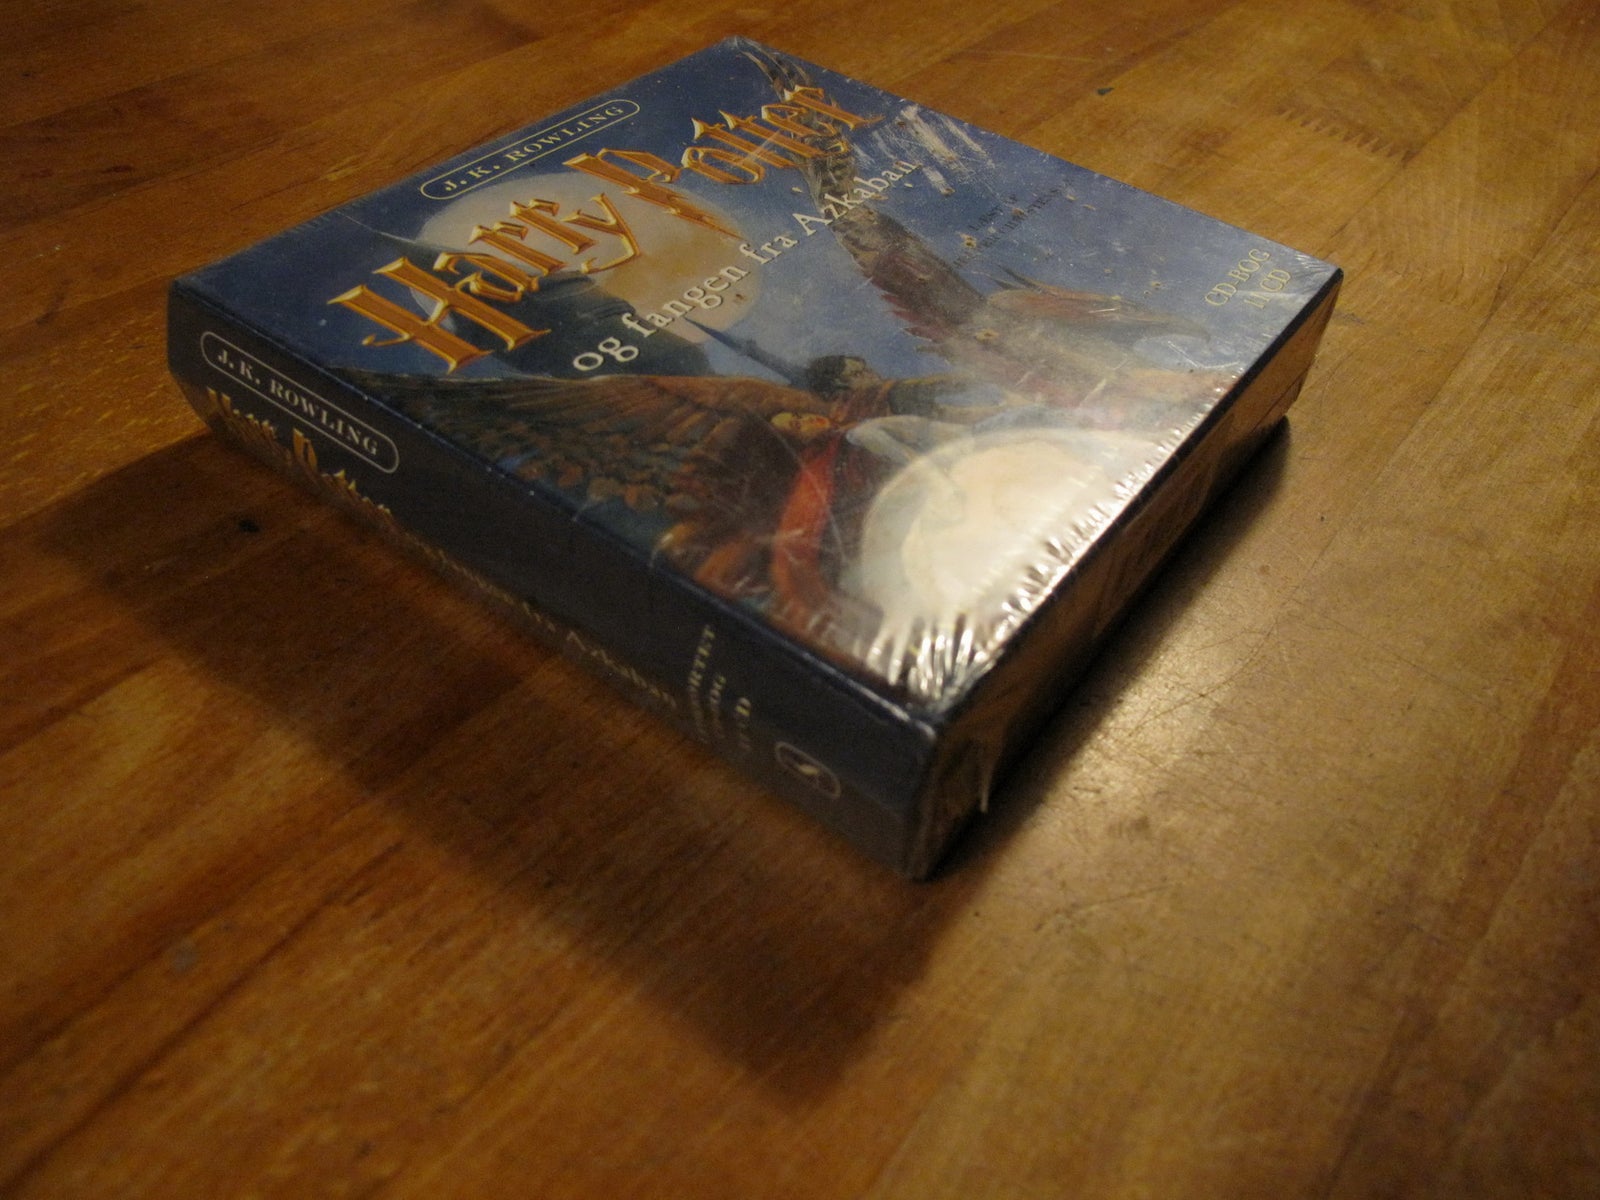 Harry Potter og fangen fra Azkaban (forseglet), J.K.